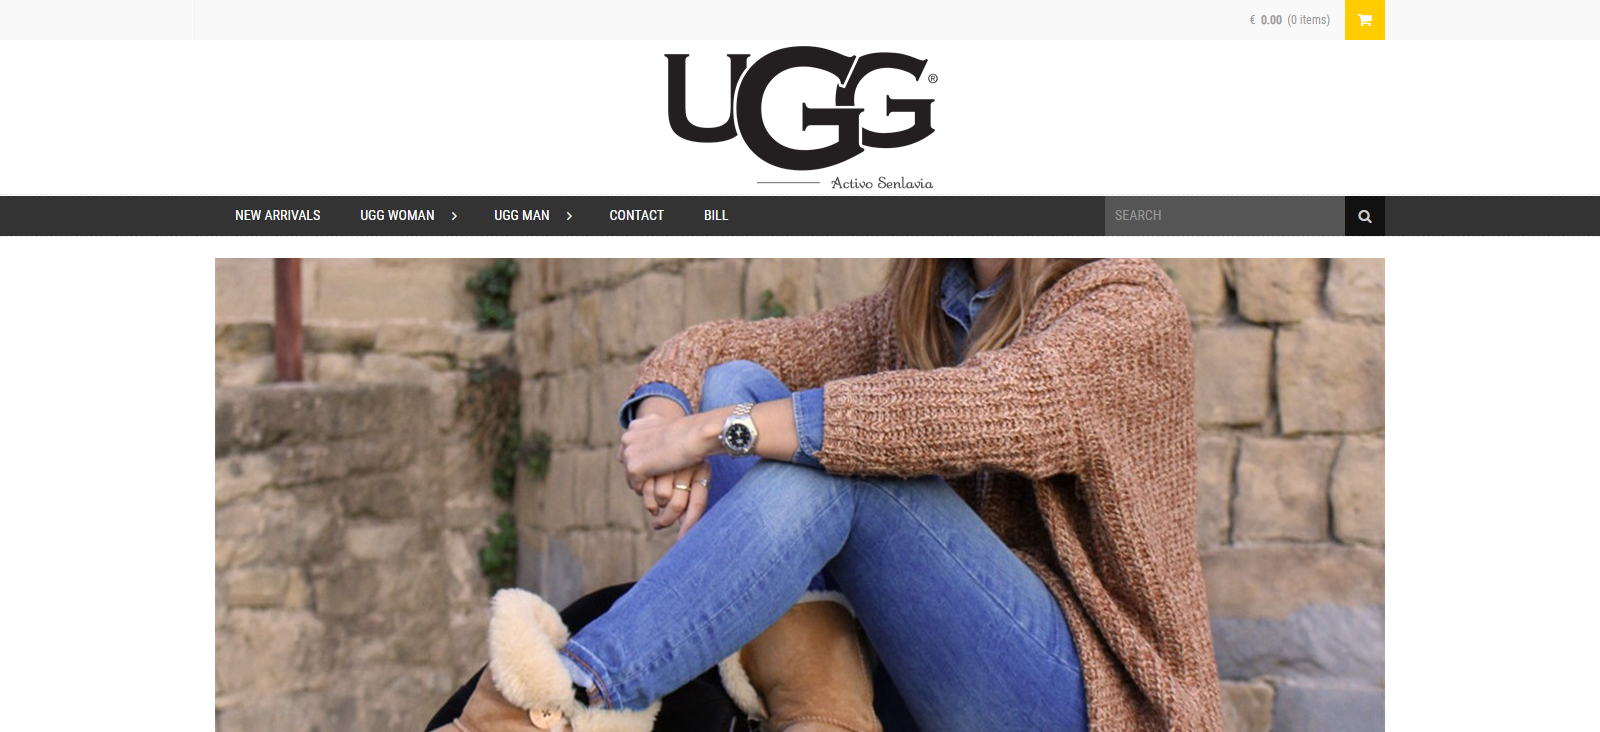 Activosenlavia.com Scam: Fake UGG Shoe Store! - SabiReviews